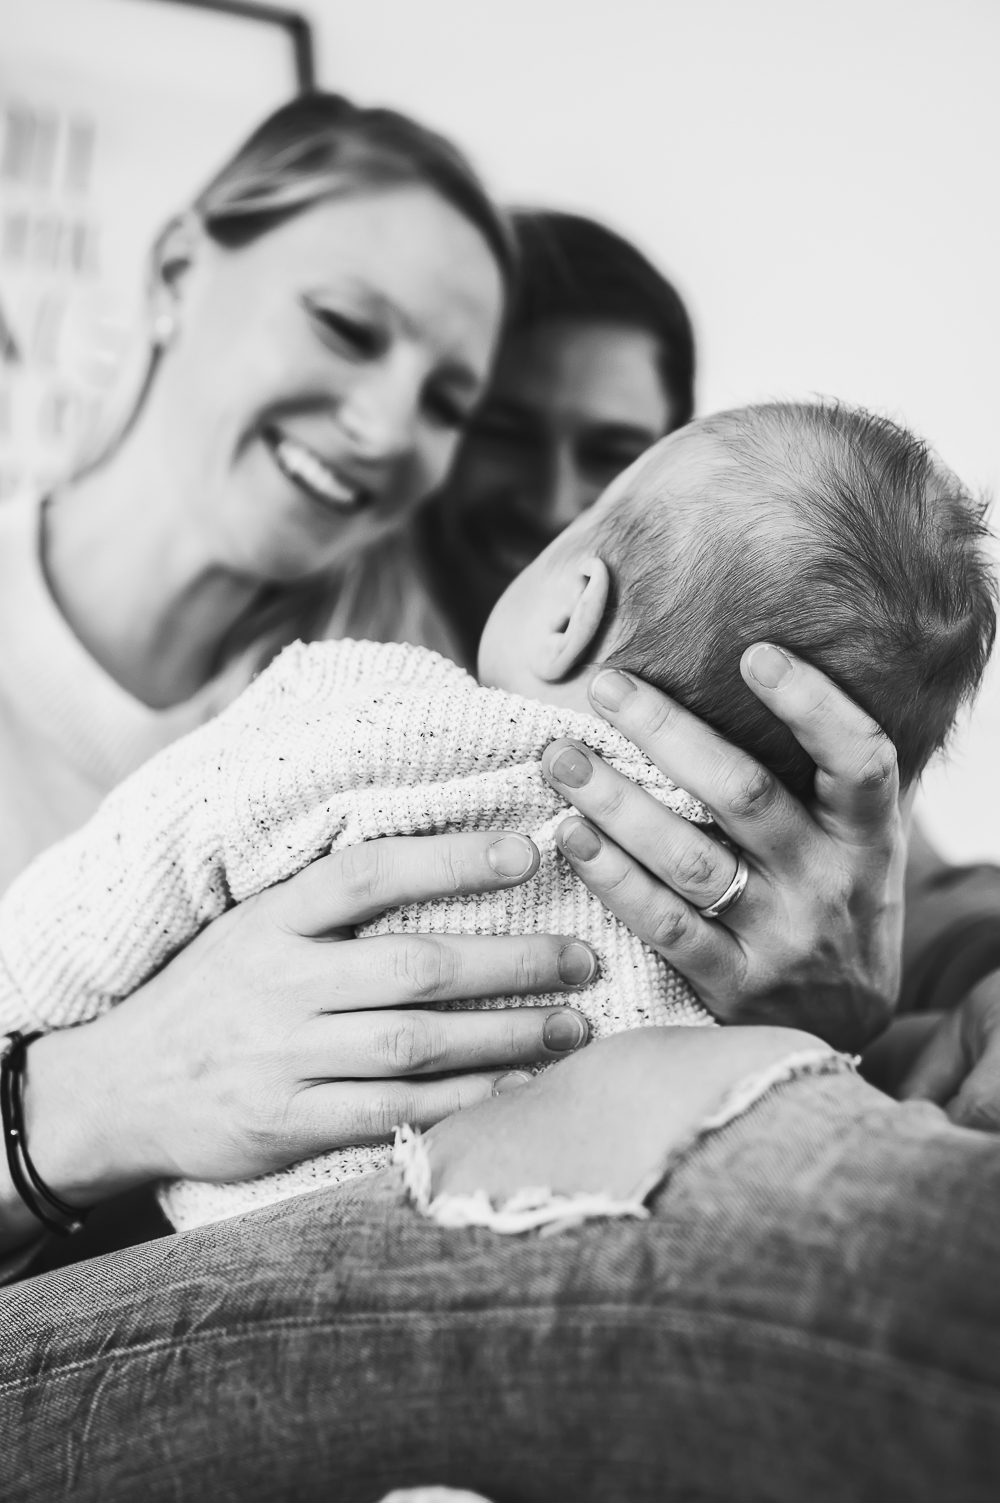 Ein berührendes Schwarz-Weiß-Porträt einer Familie mit einem neugeborenen Baby, das von der Mutter im Arm gehalten wird, während der Vater stolz auf das Baby schaut.